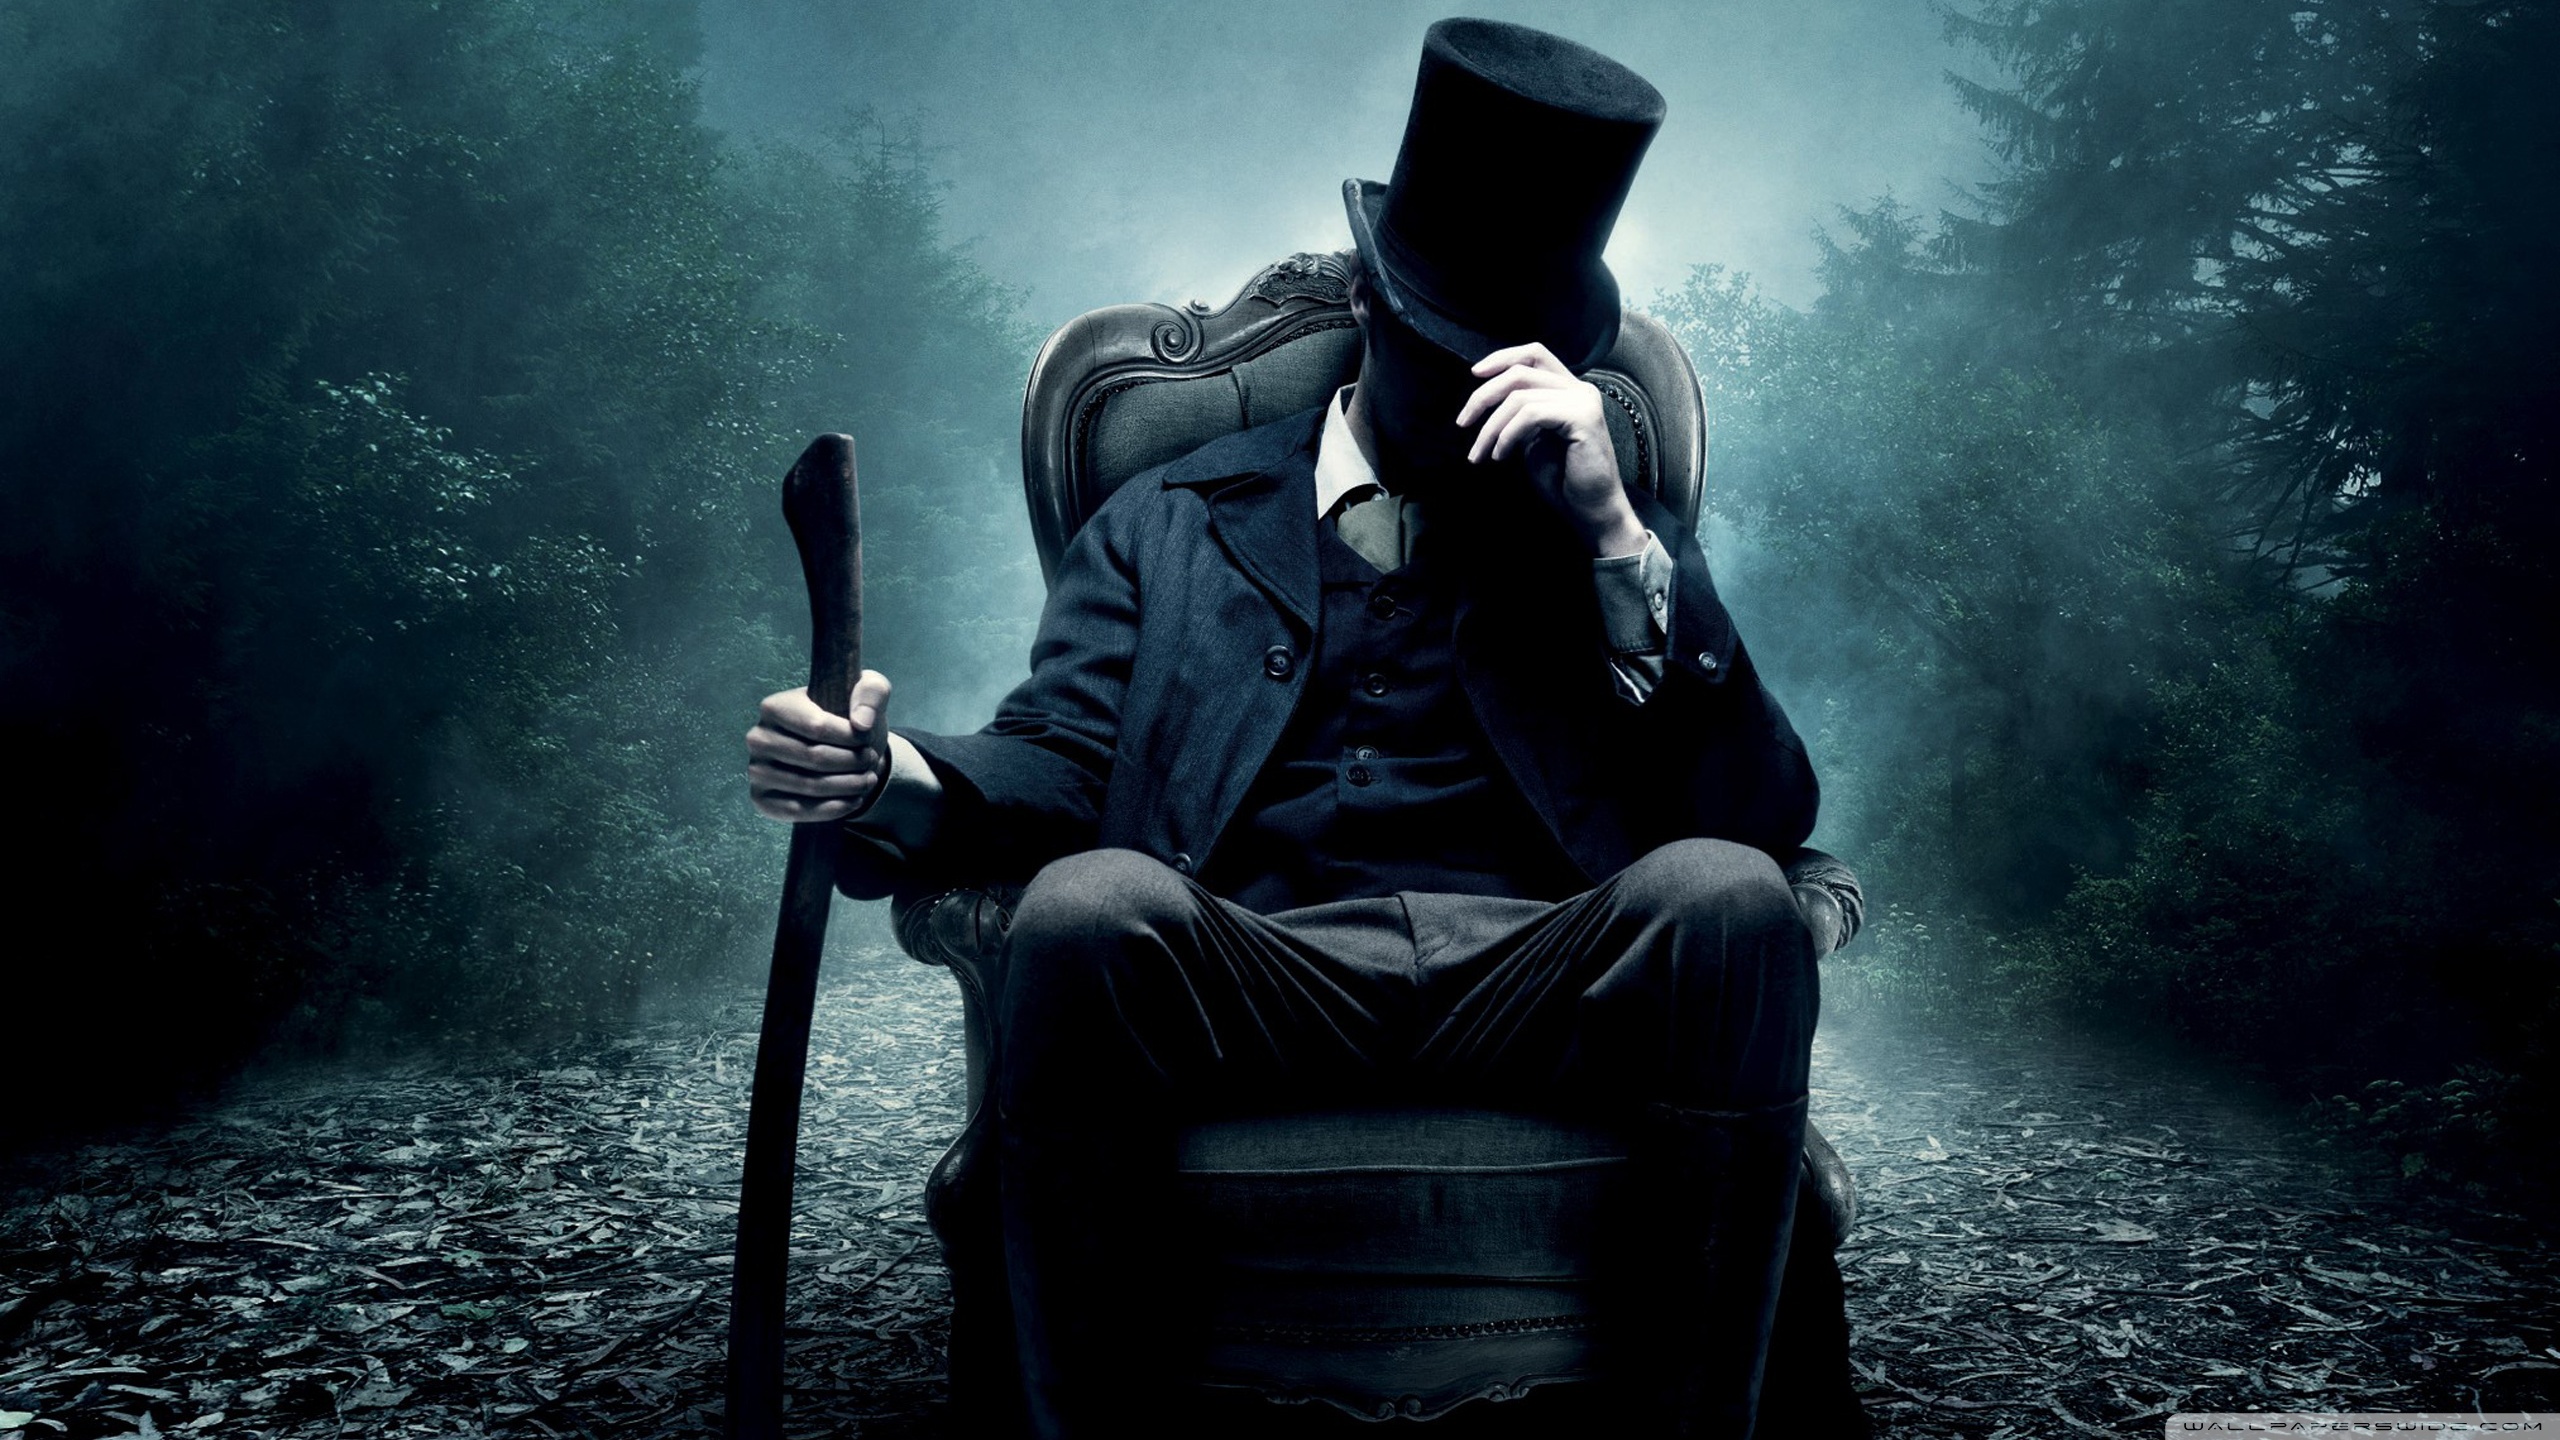 Abraham Lincoln Vampire Hunter HD desktop wallpaper : High ...